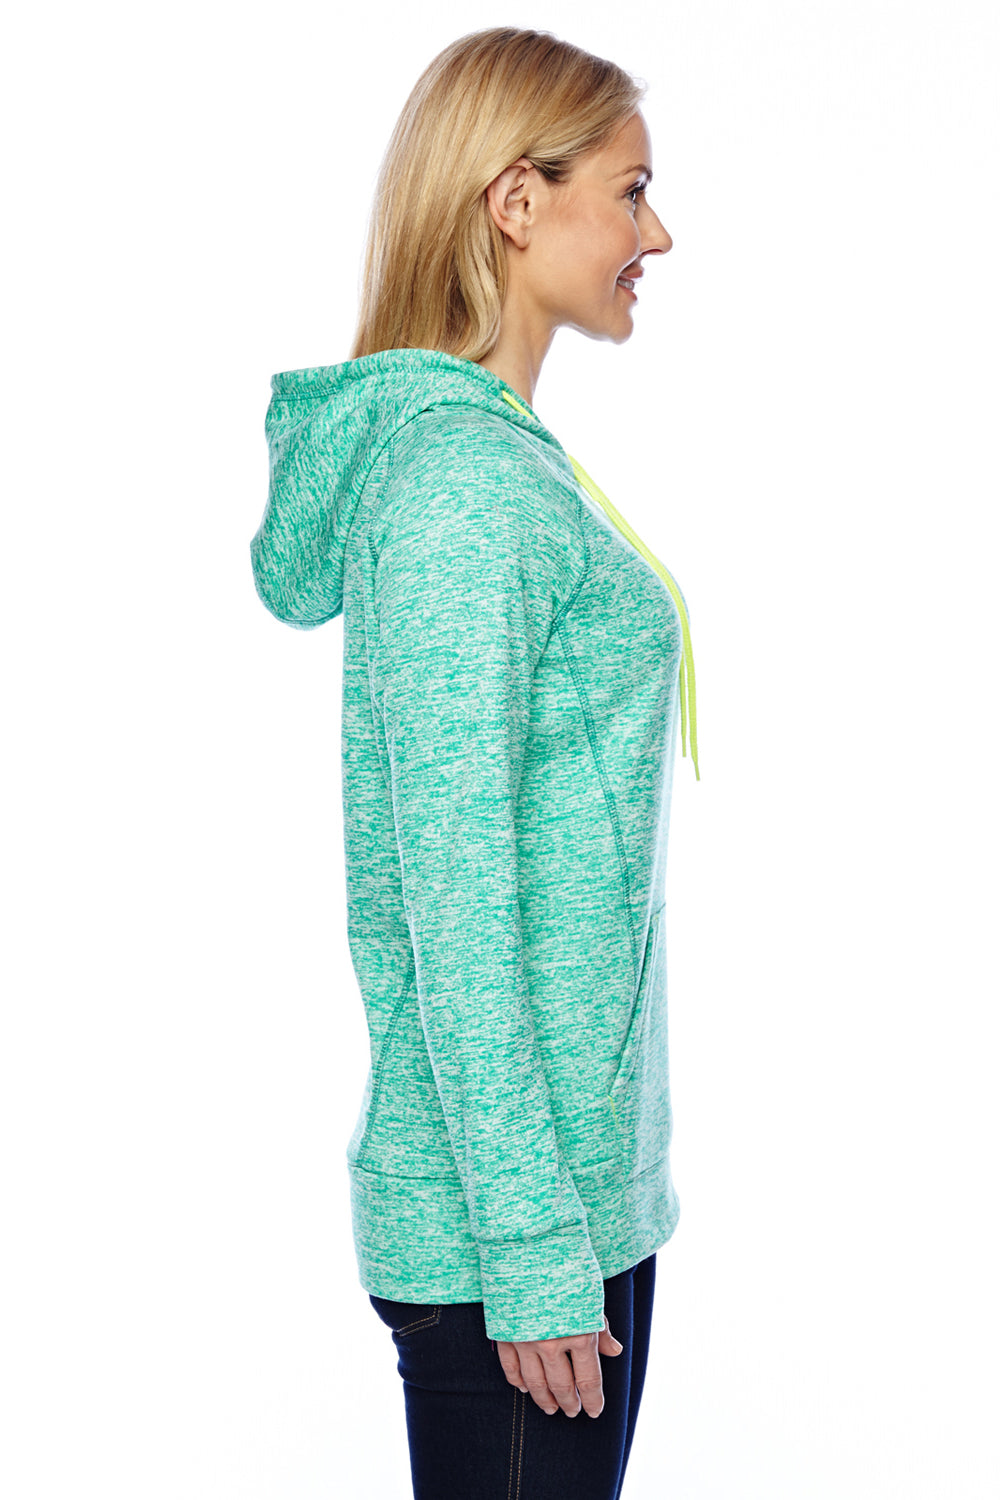 J America JA8616 Womens Cosmic Fleece Hooded Sweatshirt Hoodie Emerald Green/Neon Yellow Side